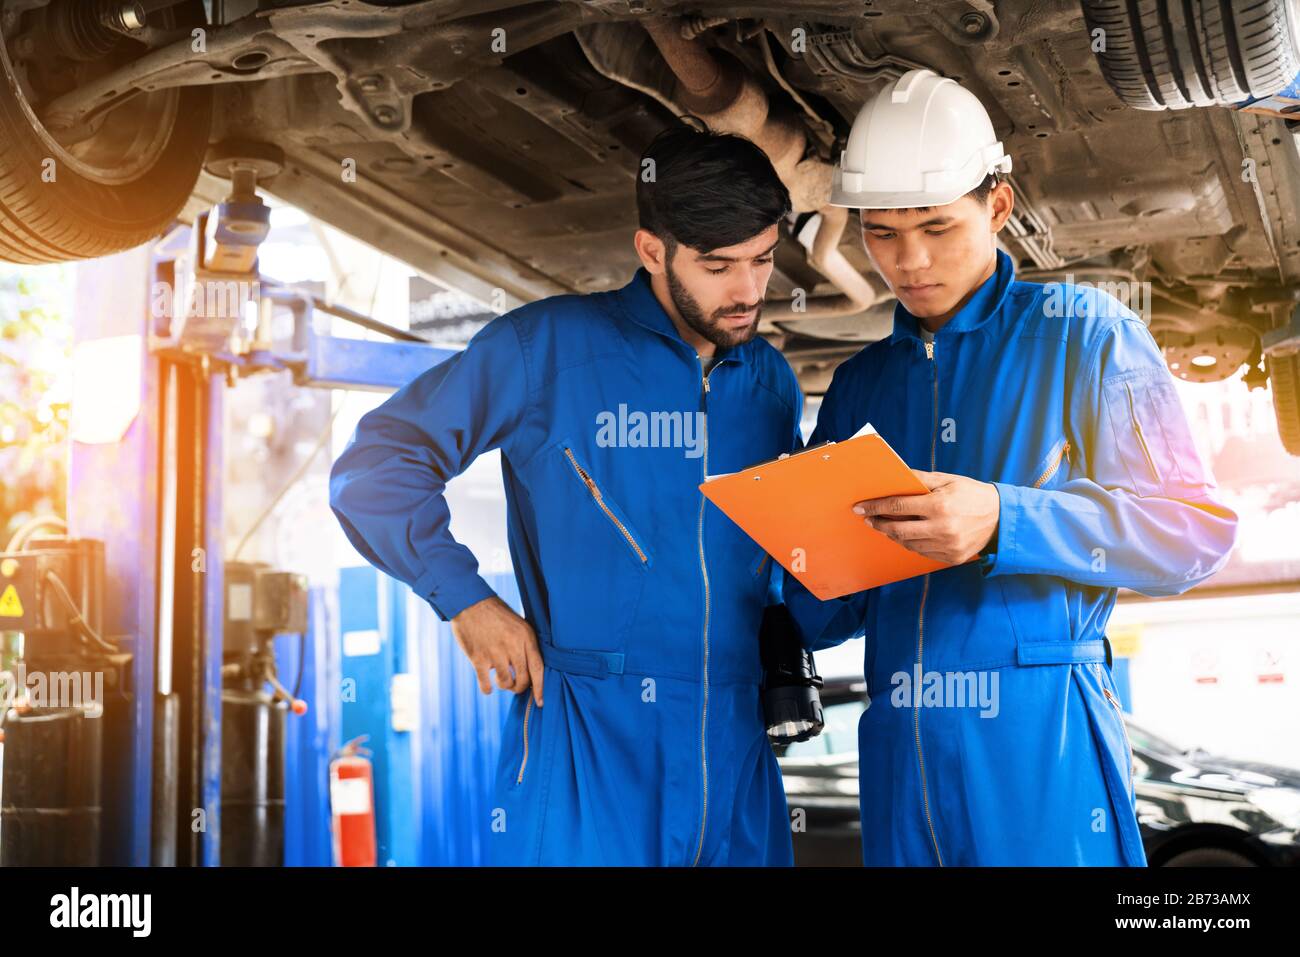 Le mécanicien en uniforme bleu d'usure inspecte le fond de la voiture avec son assistant. Service de réparation automobile, travail d'équipe professionnel. Banque D'Images